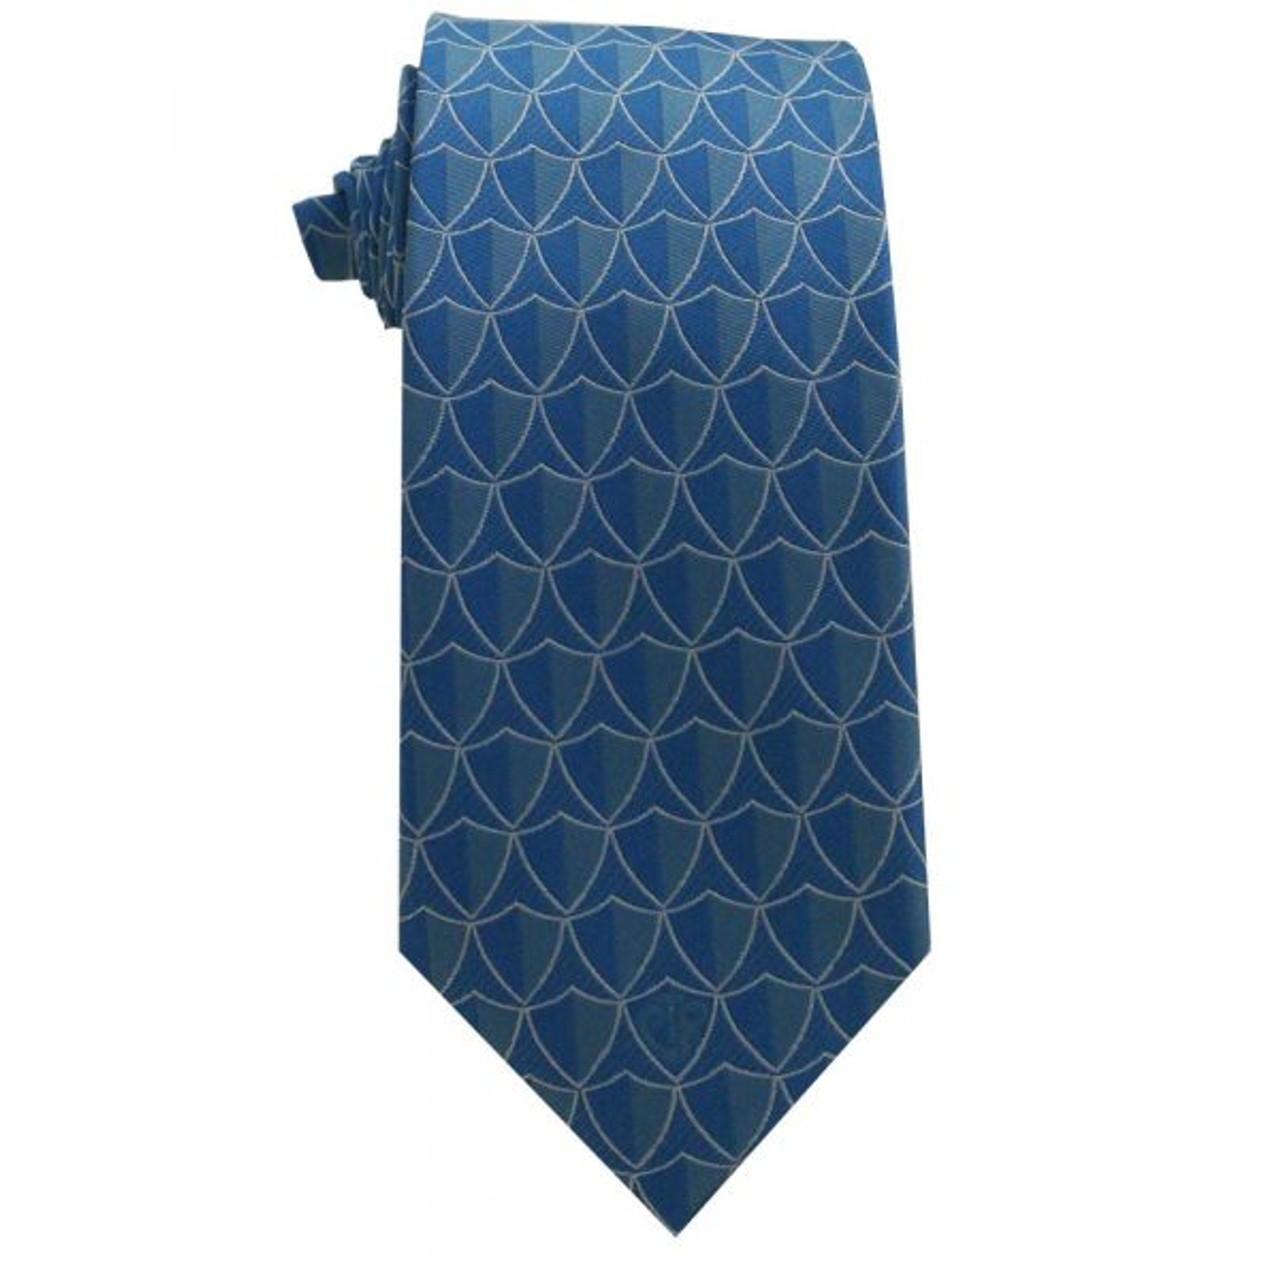 New CTR Blue Men’s Tie